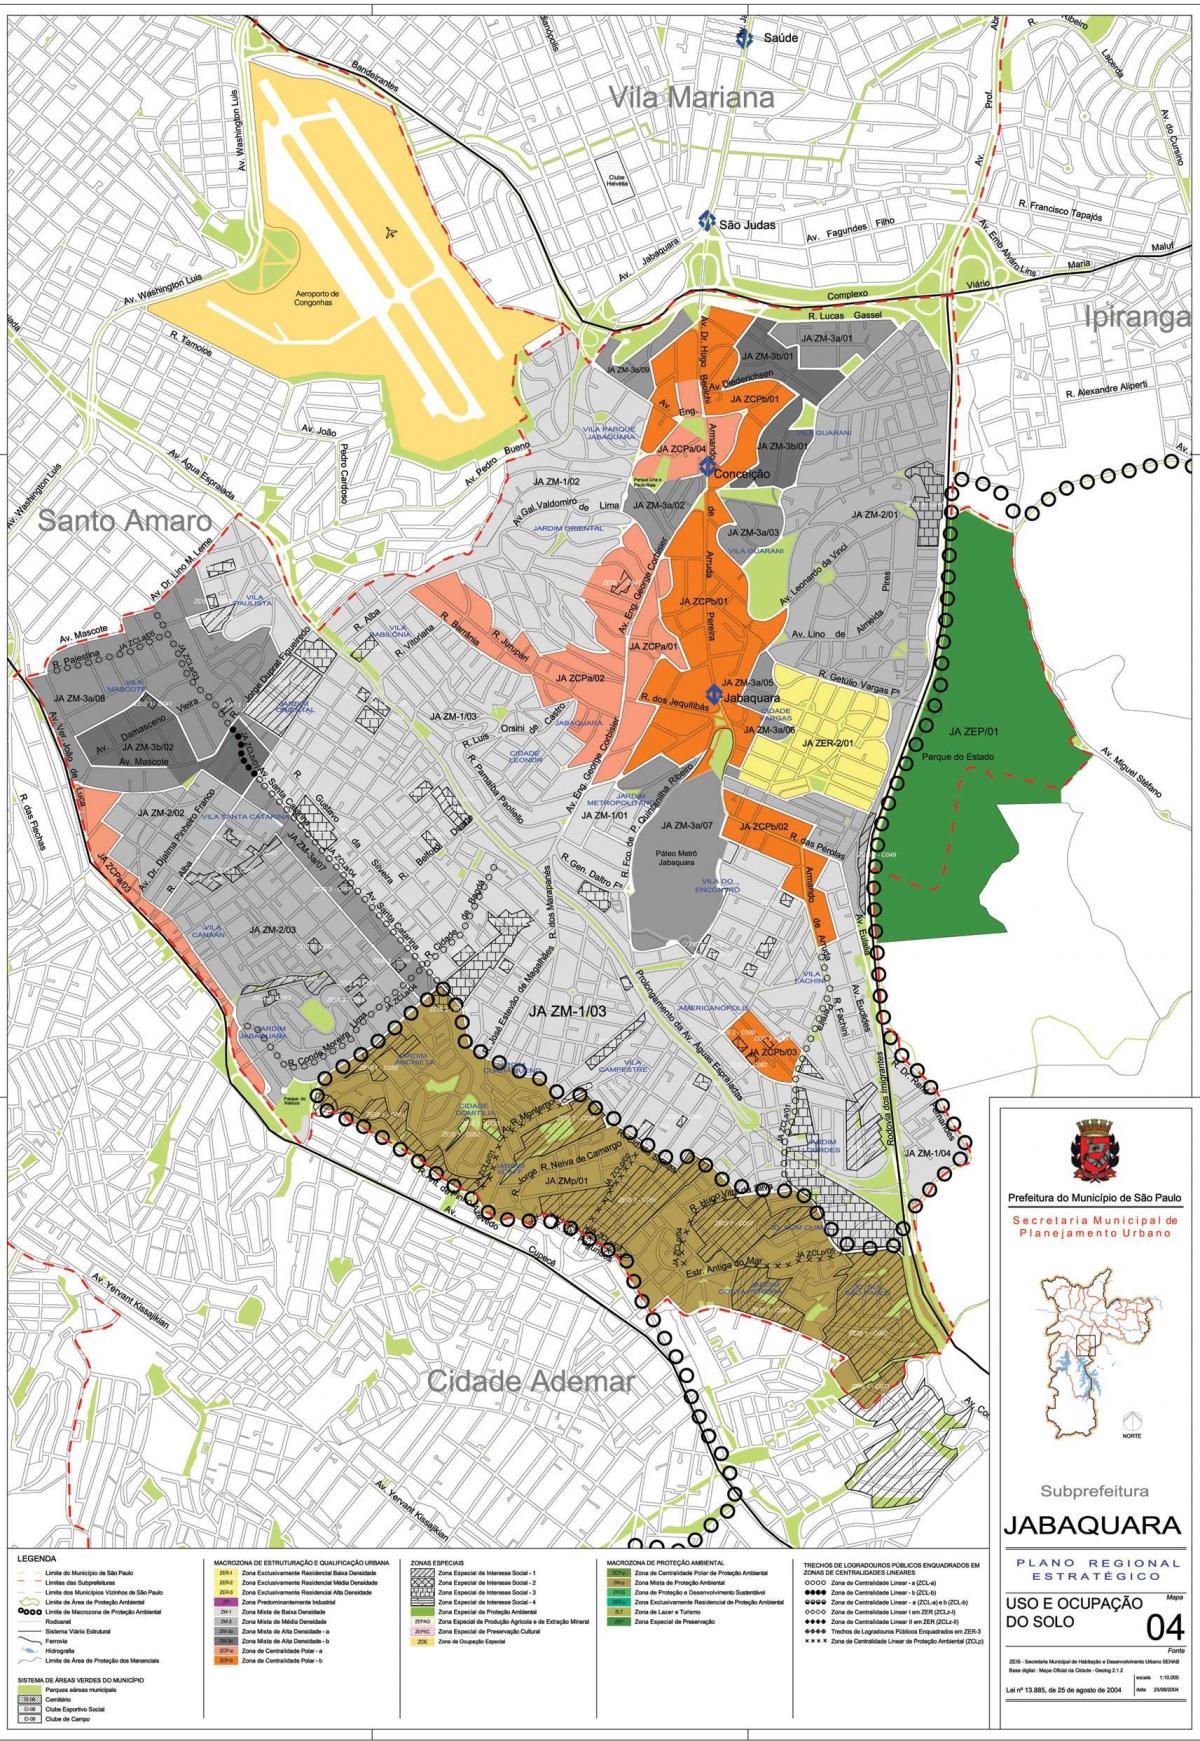 Mapa de Jabaquara São Paulo - la Ocupación de la tierra